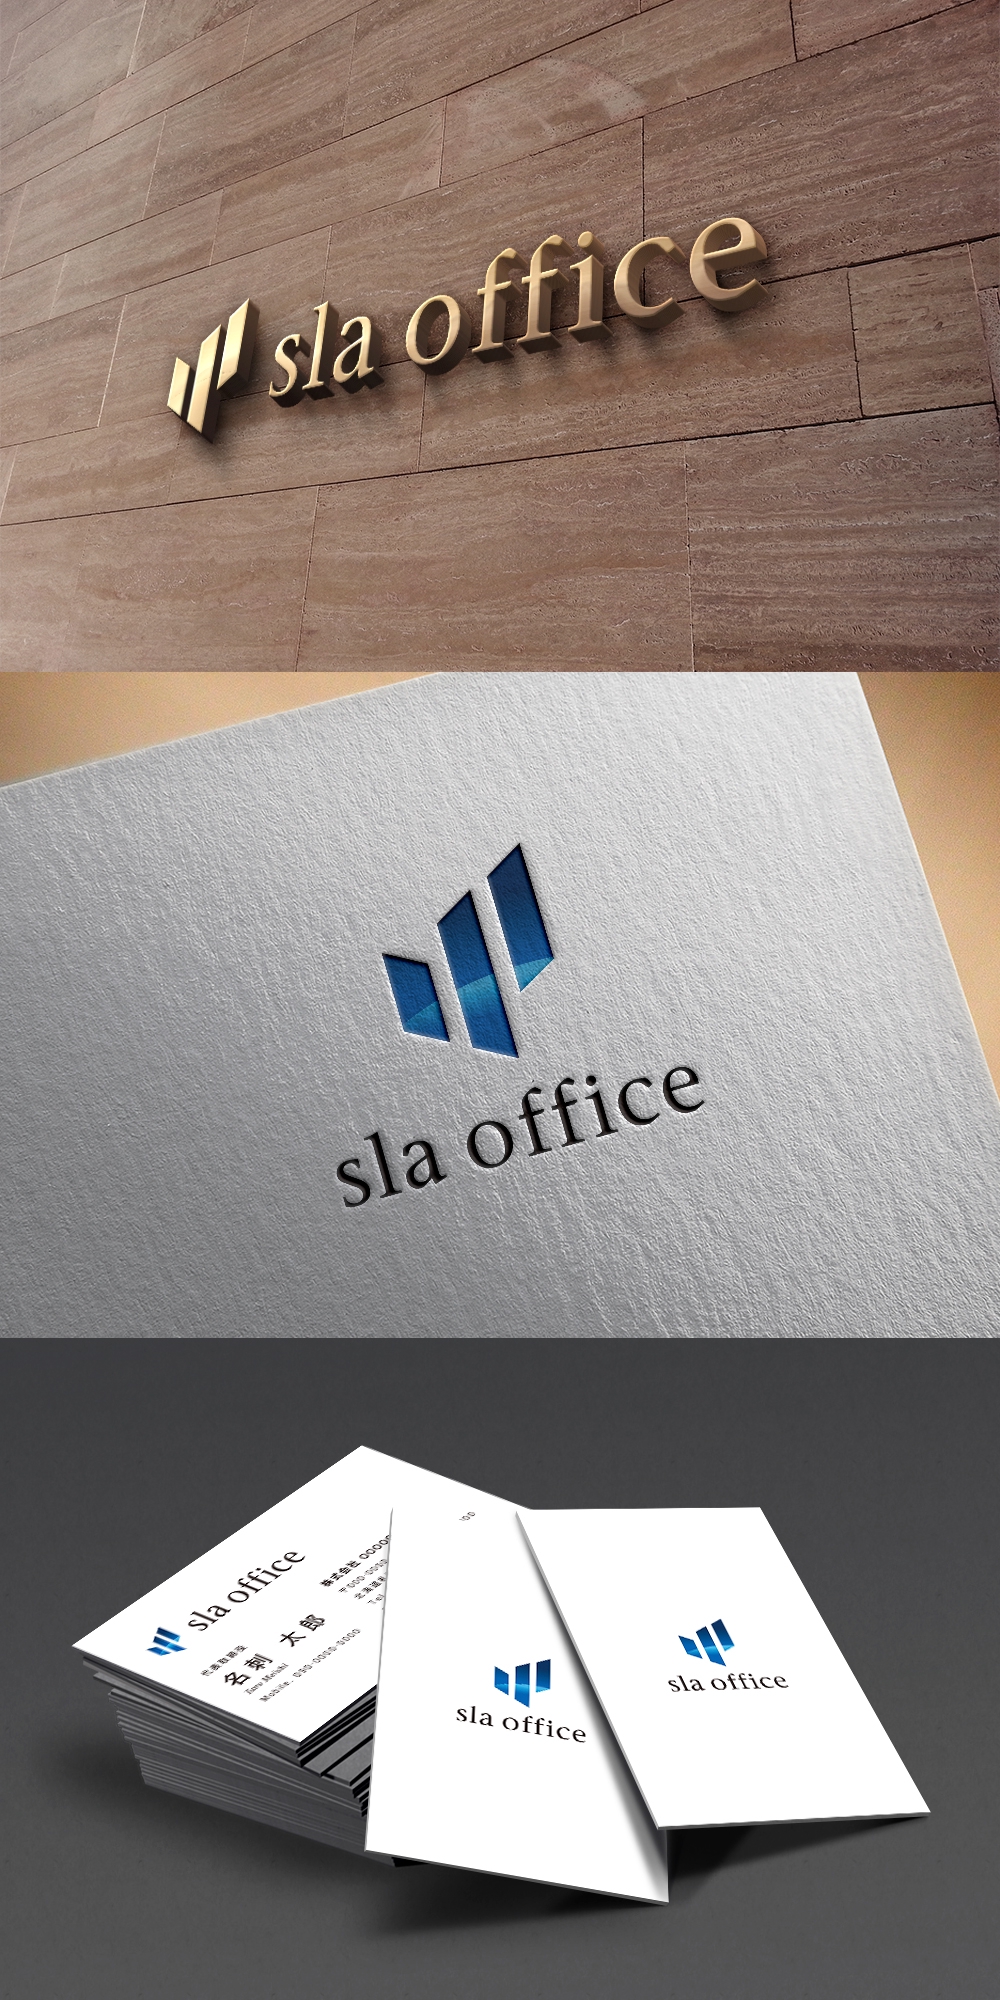 清水法律会計事務所の「sla office」のロゴ